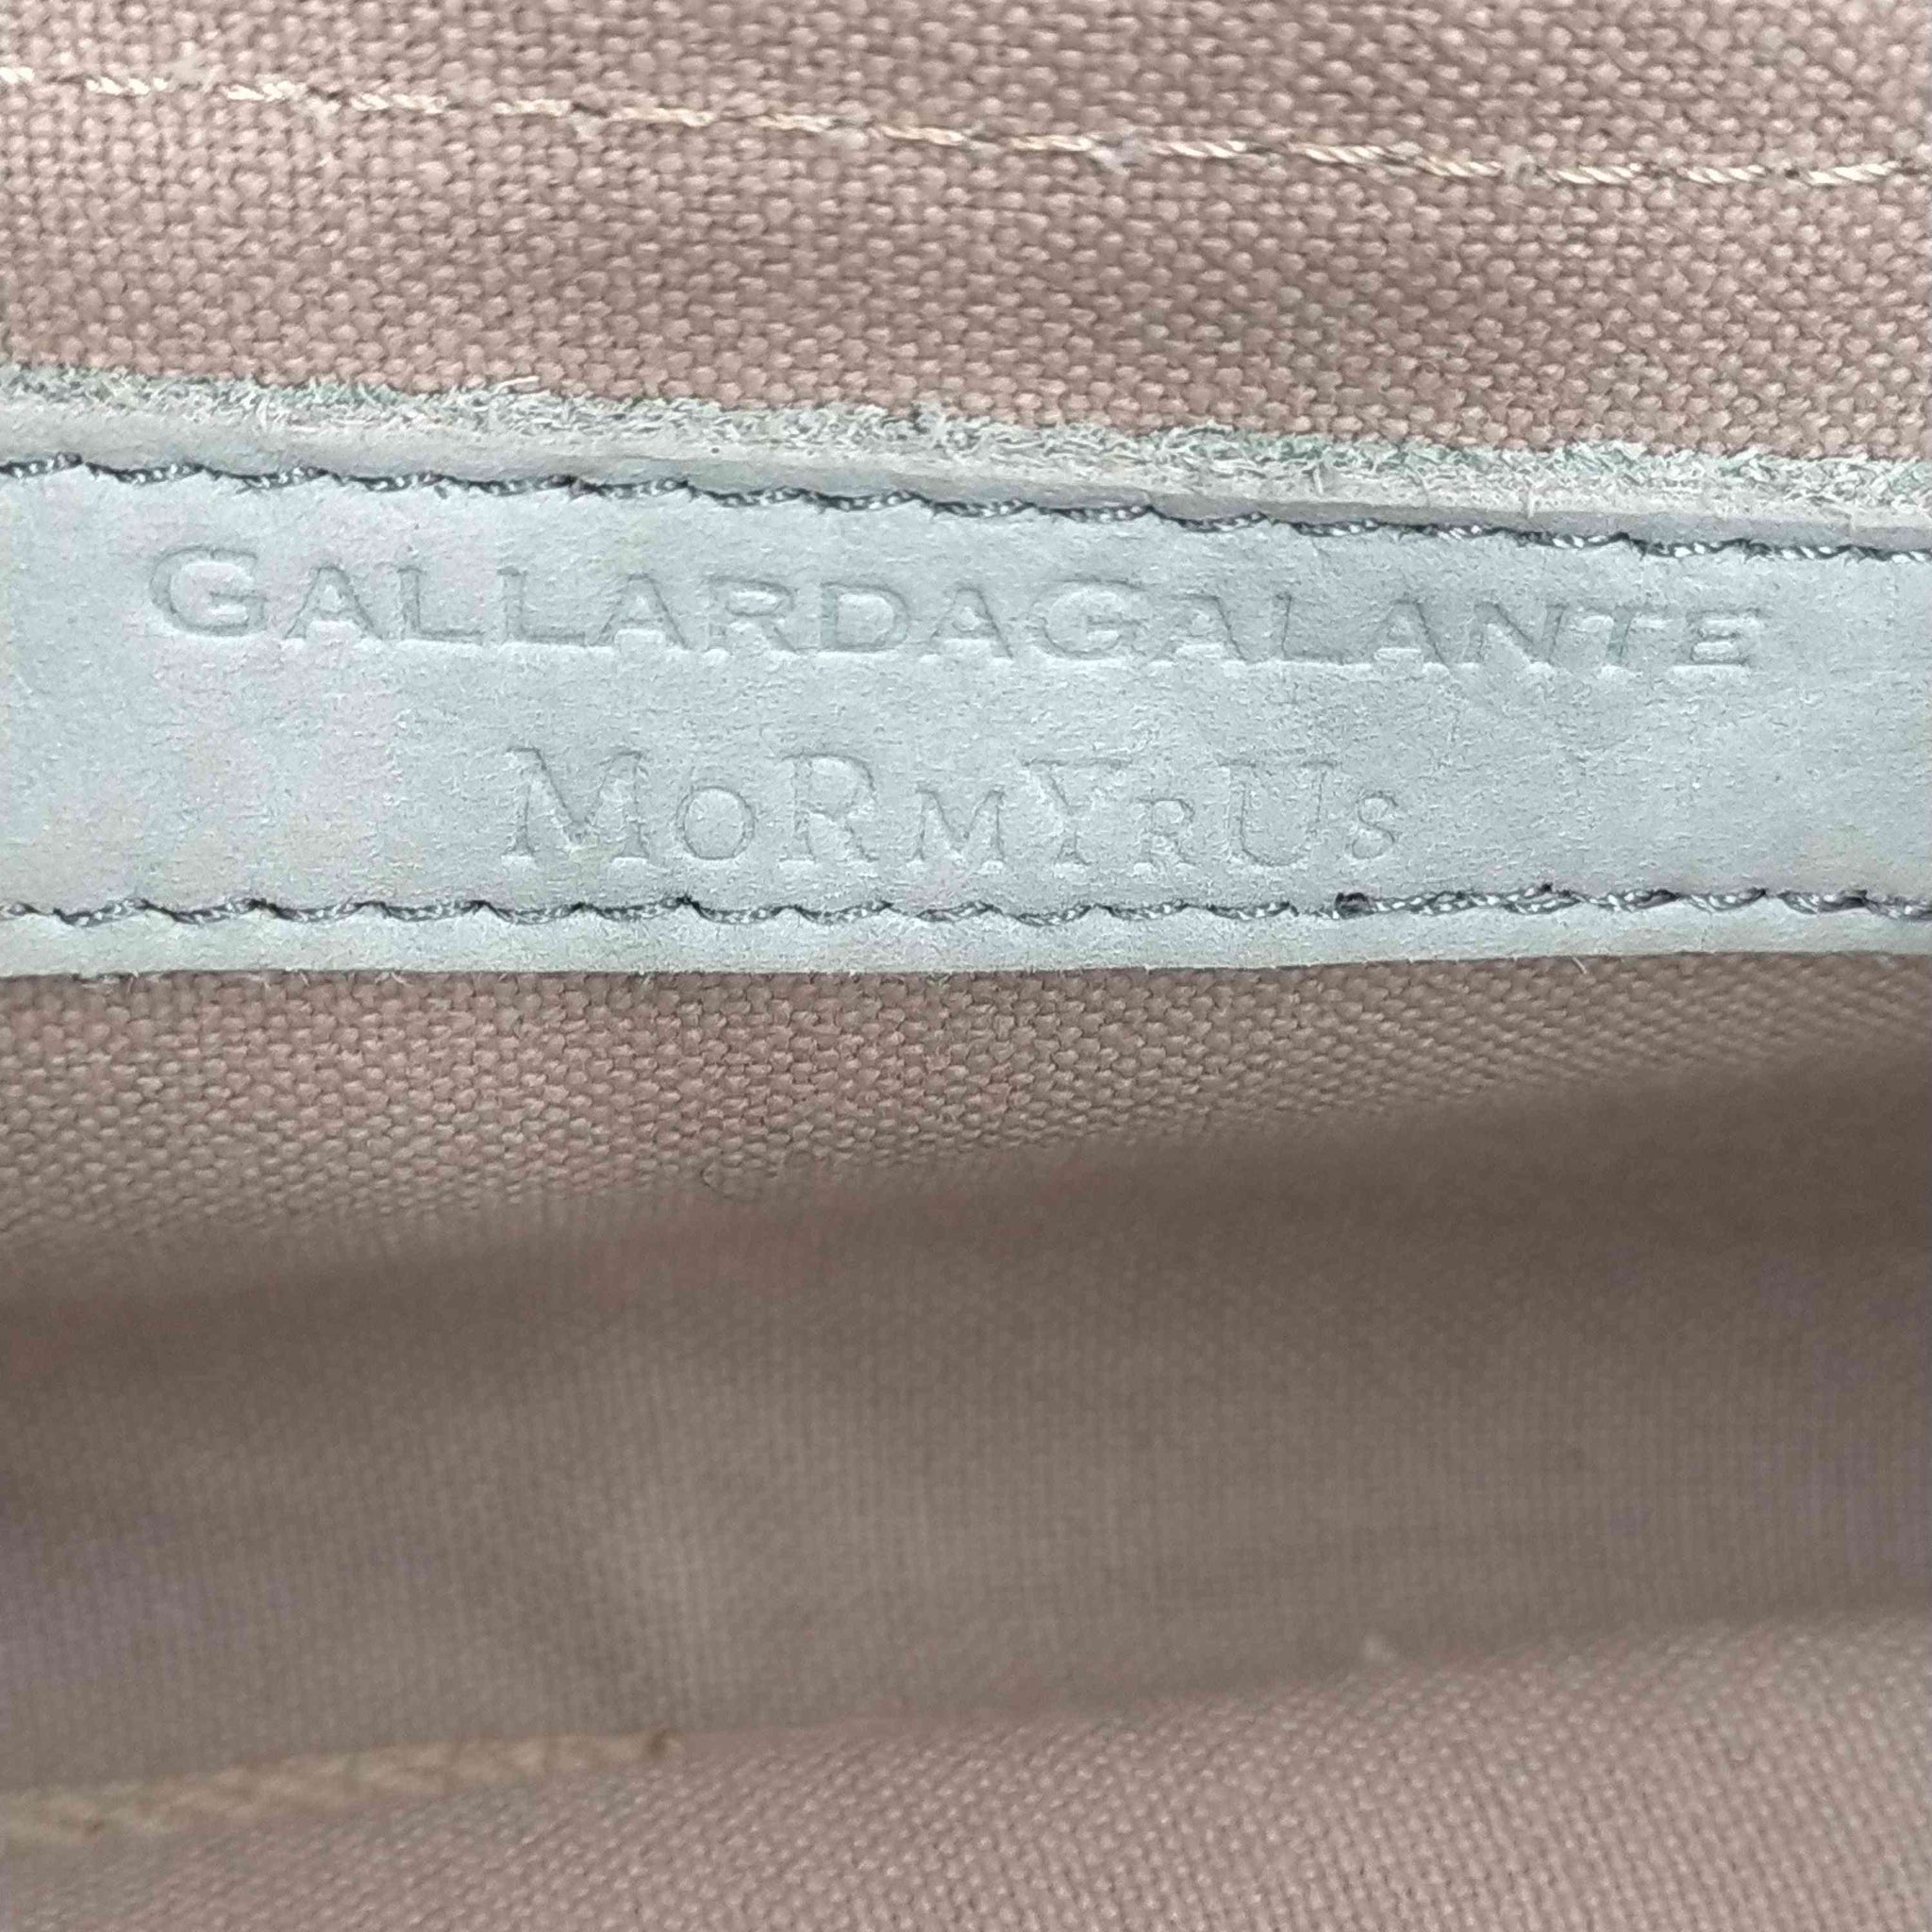 GALLARDAGALANTE(ガリャルダガランテ)ヌメ革 ハンドバッグ